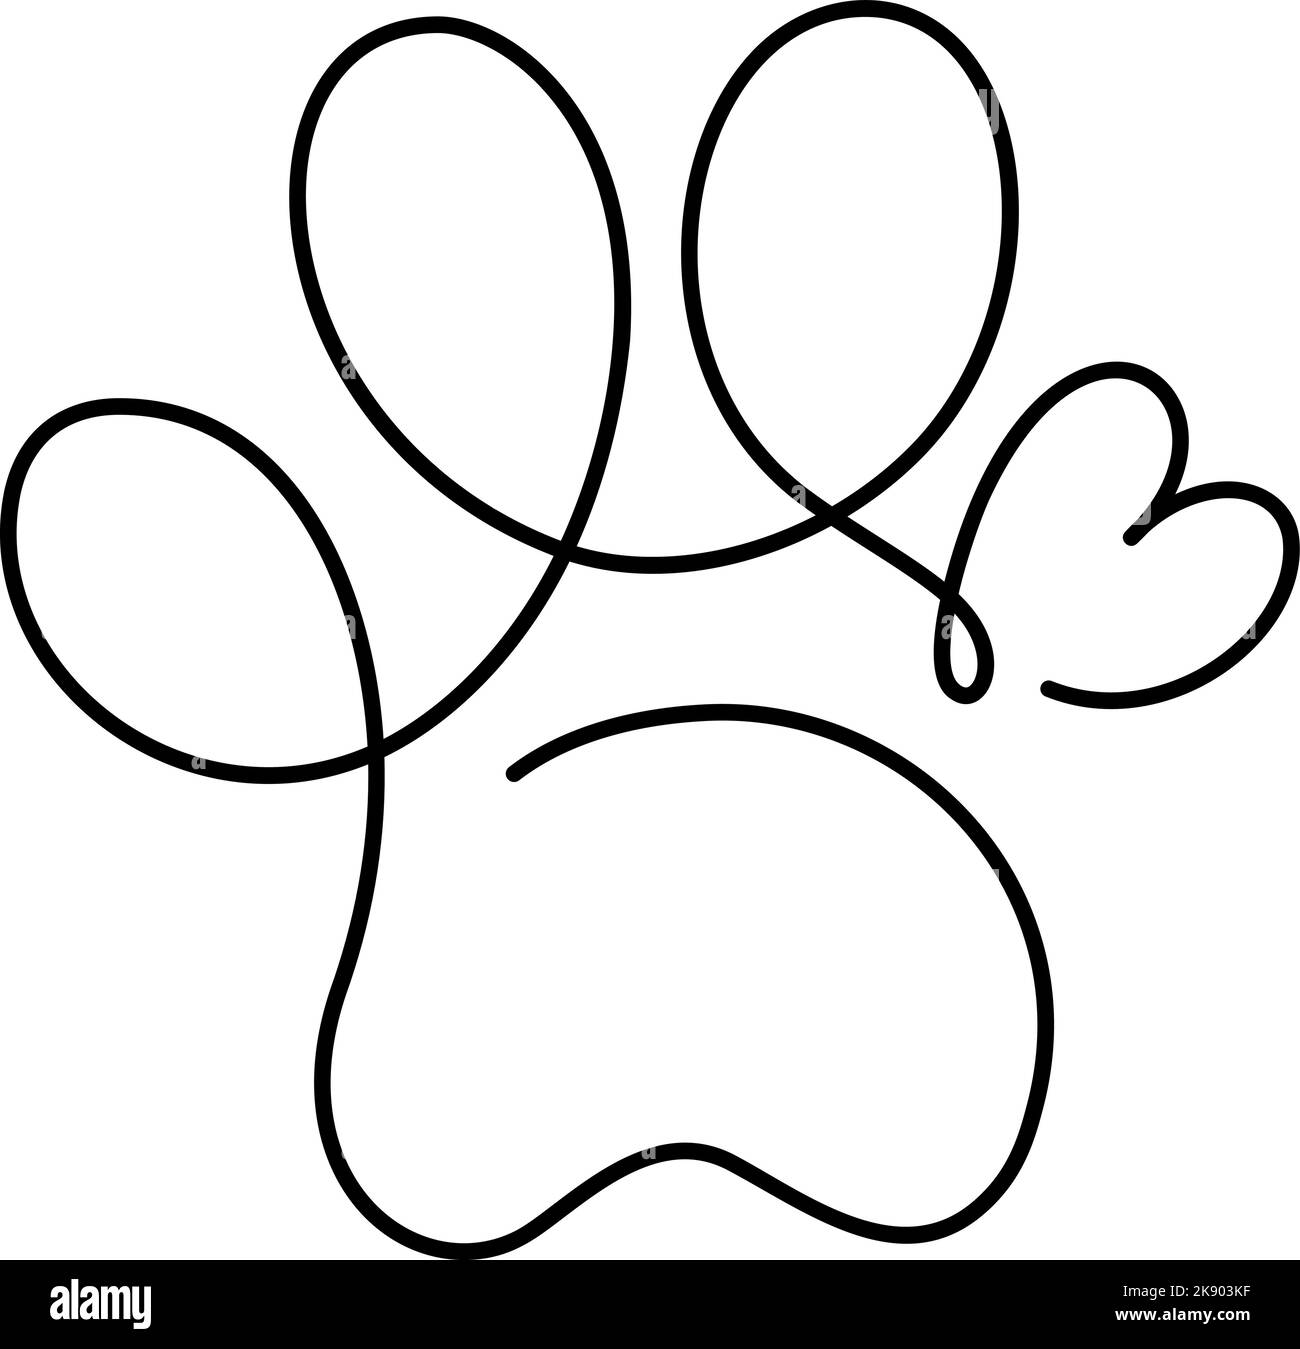 Herz mit Katze oder Hundepfote in durchgehender einzeiliger Zeichnung Logo. Minimal Line Art. Tierdruck im Herzen. PET Love-Konzept Stock Vektor